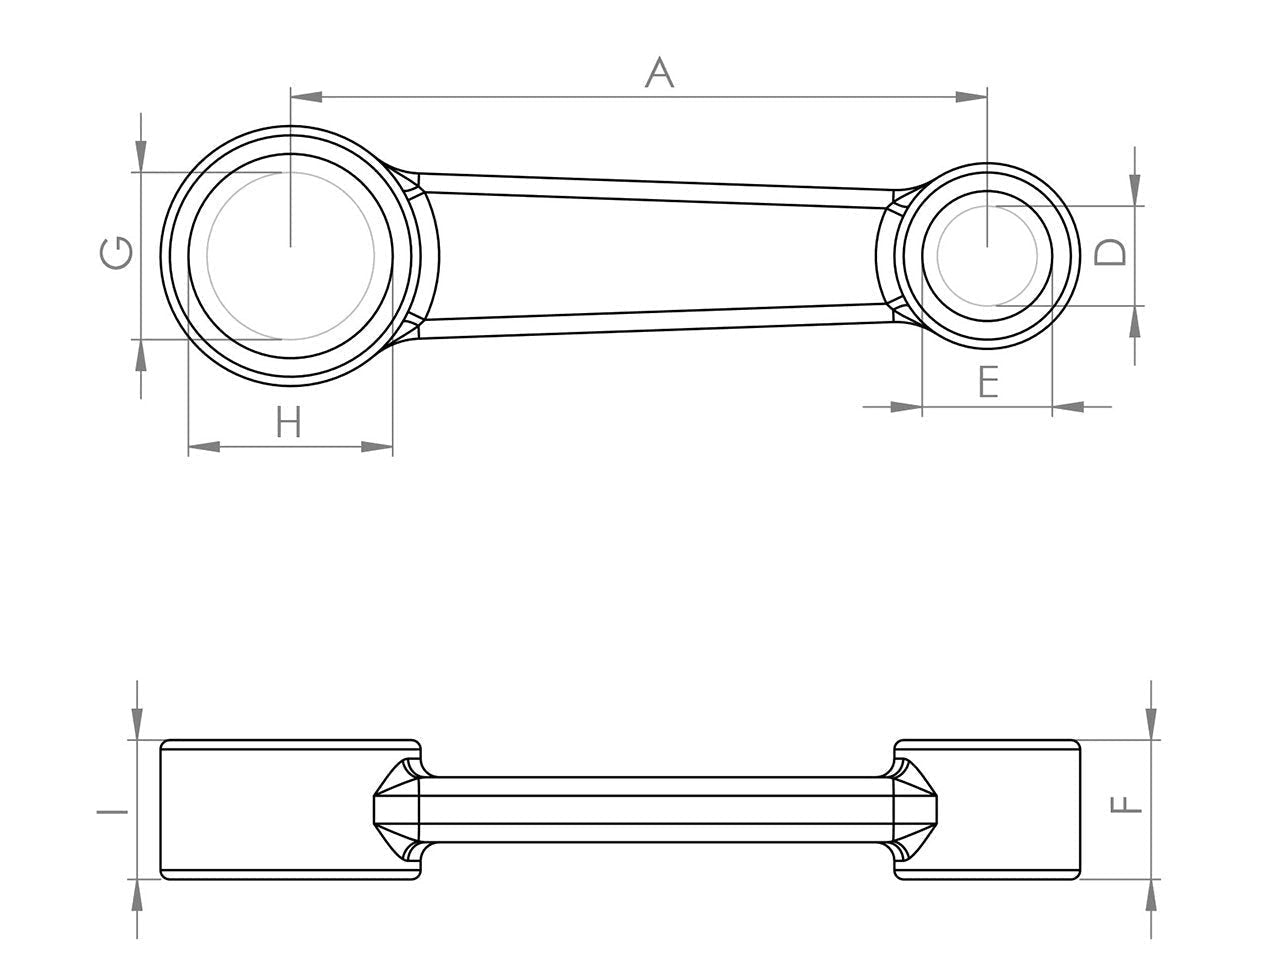 Zeichnung Barikit Pleuel für einen Yamaha YZ 250 Motor mit Bemaßung.